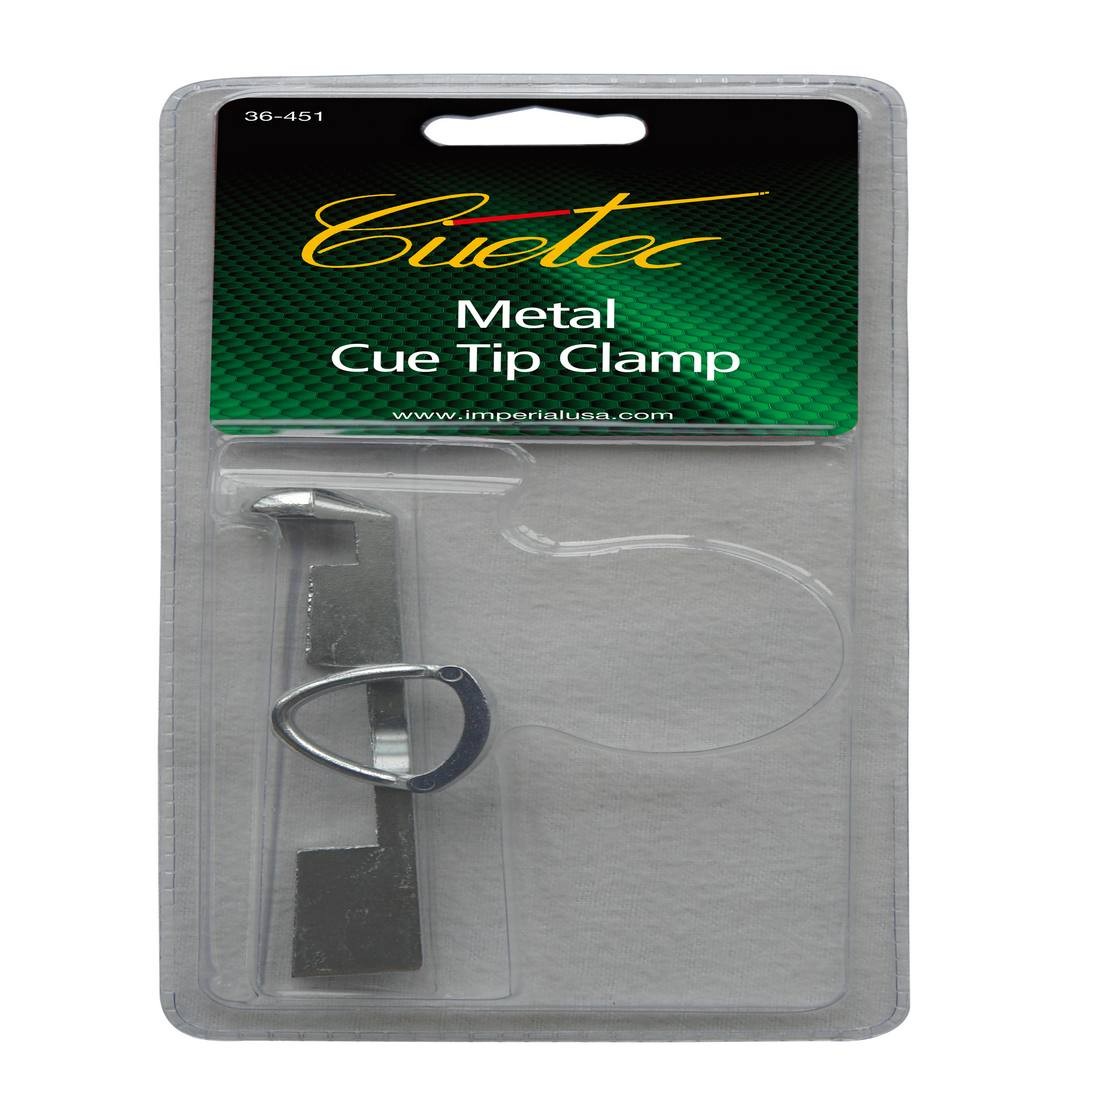 36-451 Cuetec Aluminum Cue Tip Clamp